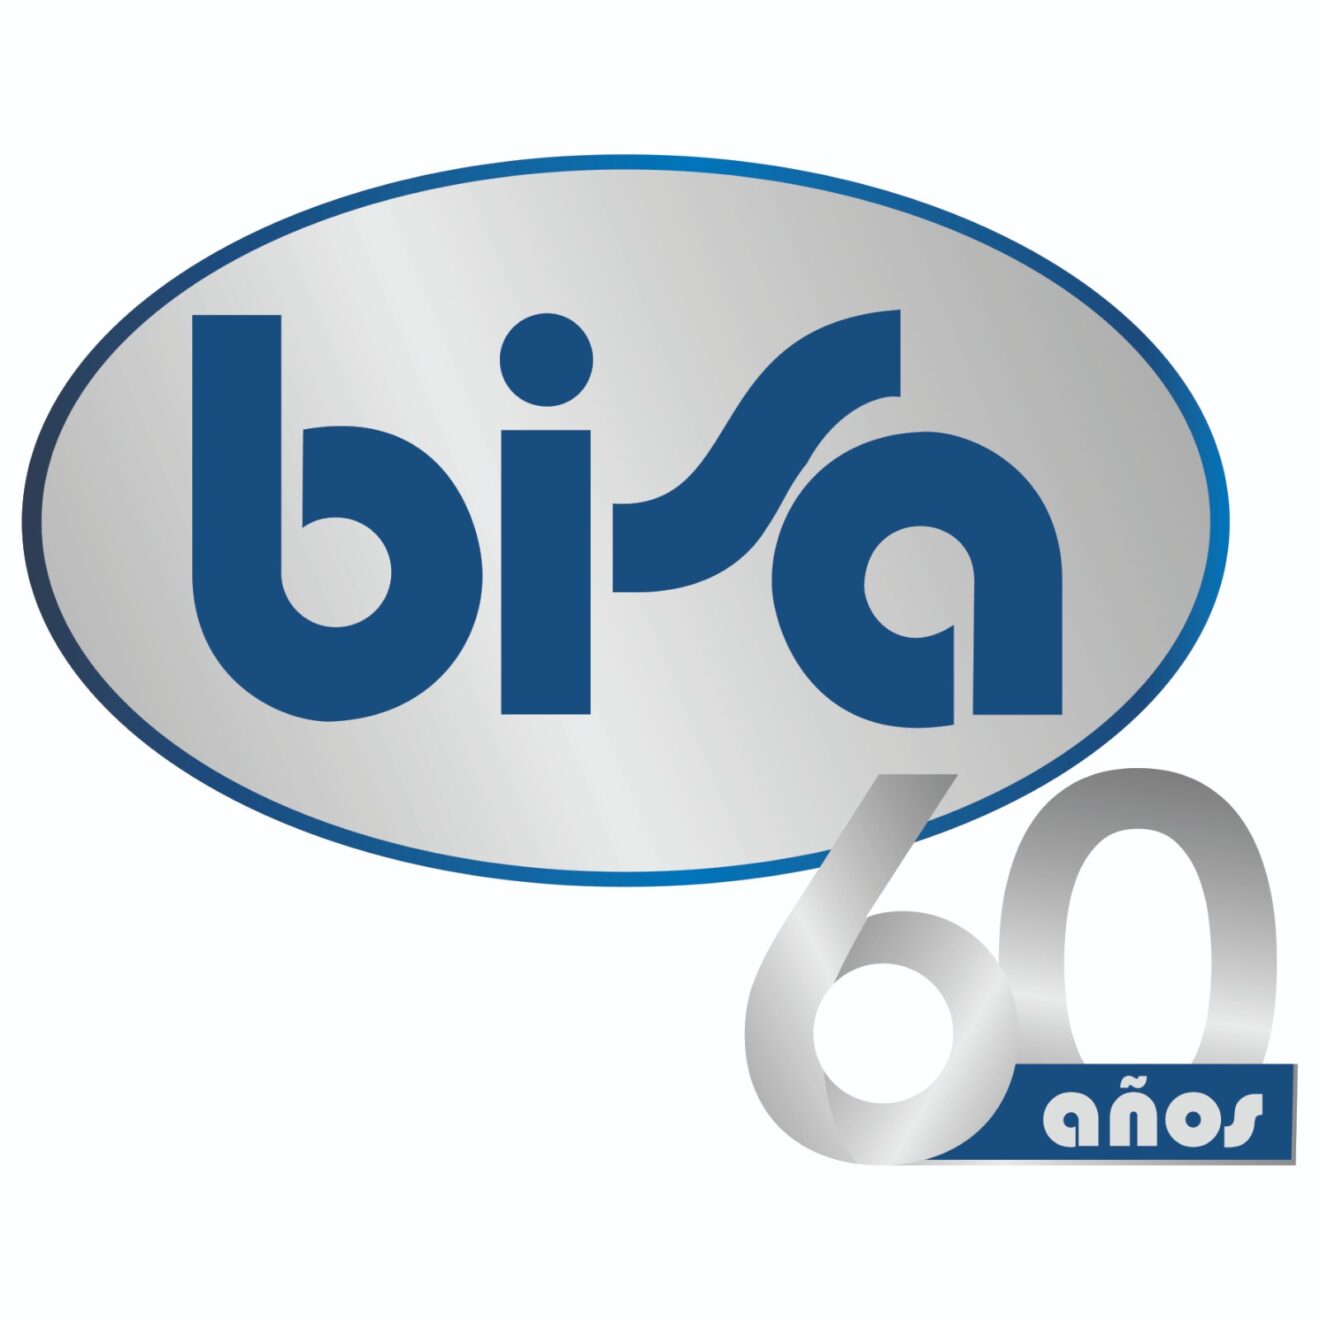 Banco BISA celebra 60 años de compromiso con el desarrollo productivo y empresarial de Bolivia